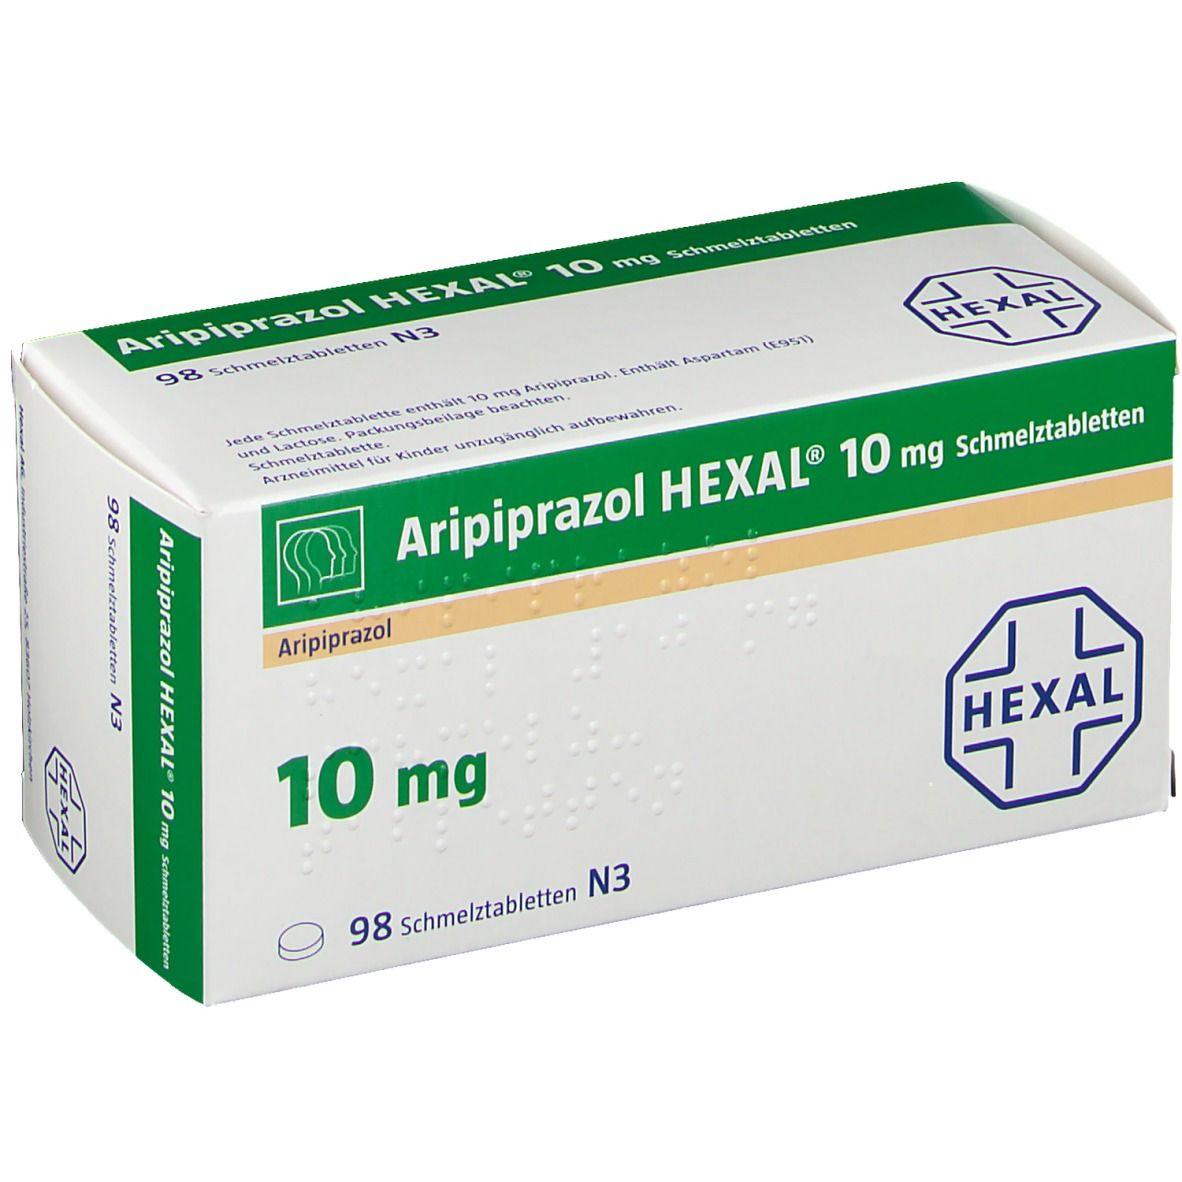  Aripiprazol HEXAL® 10 mg Schmelztabletten